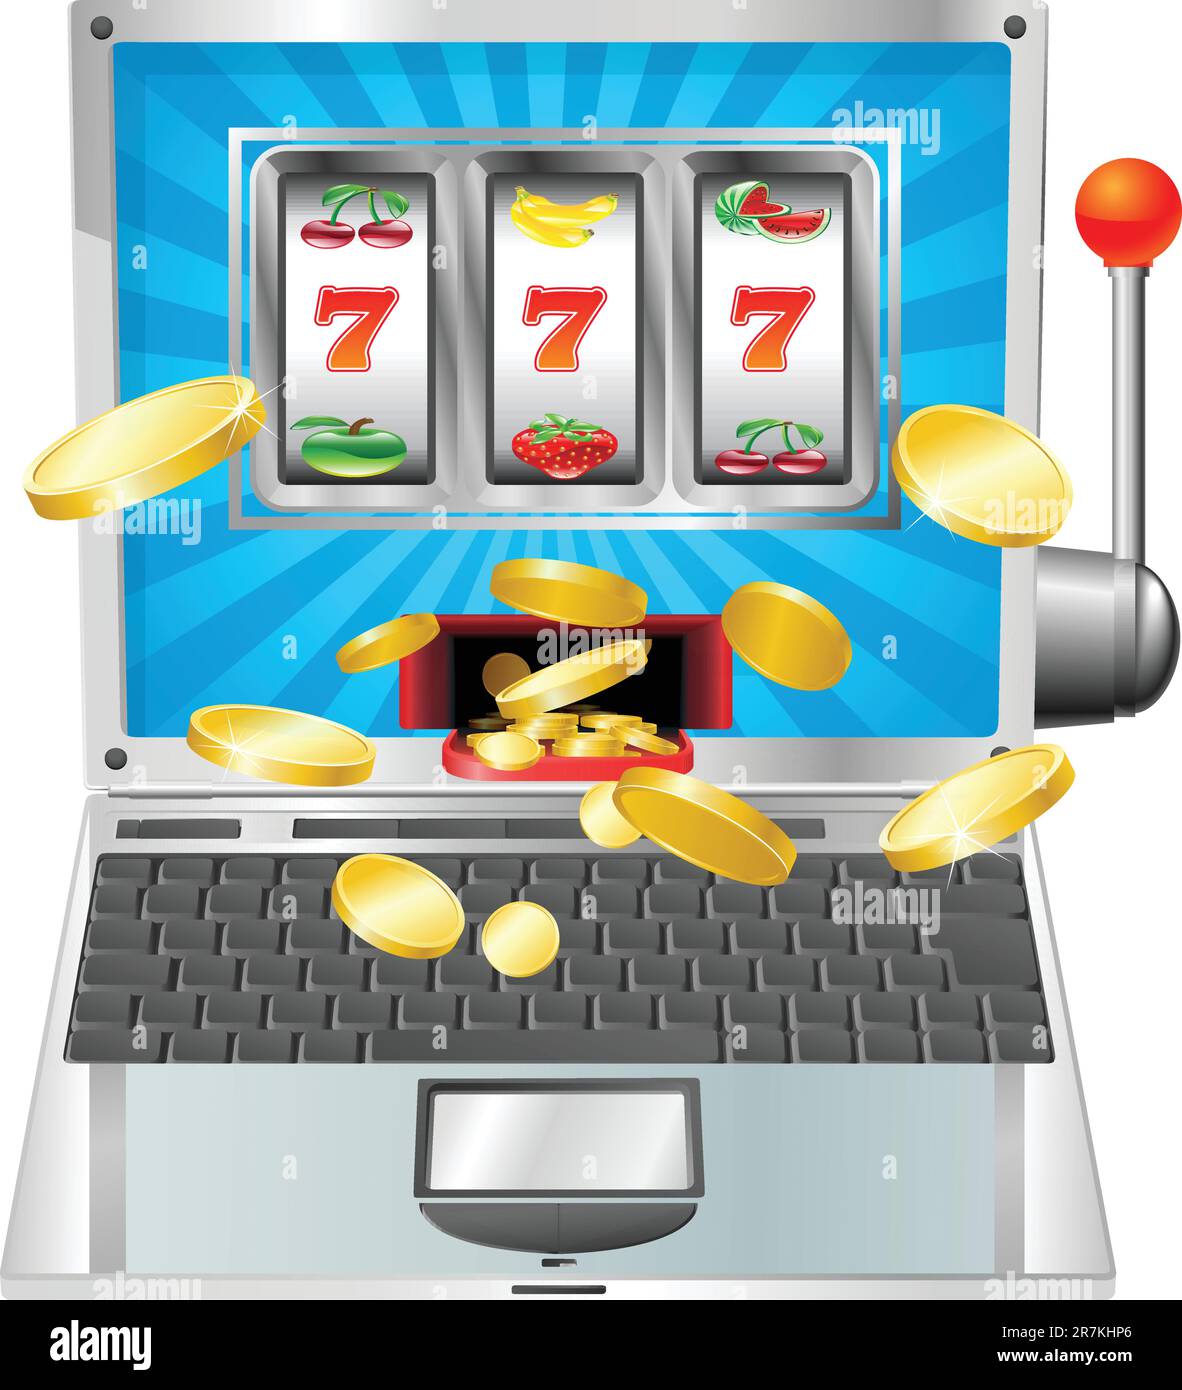 Laptop fruit machine online gambling win concept Stock Vector